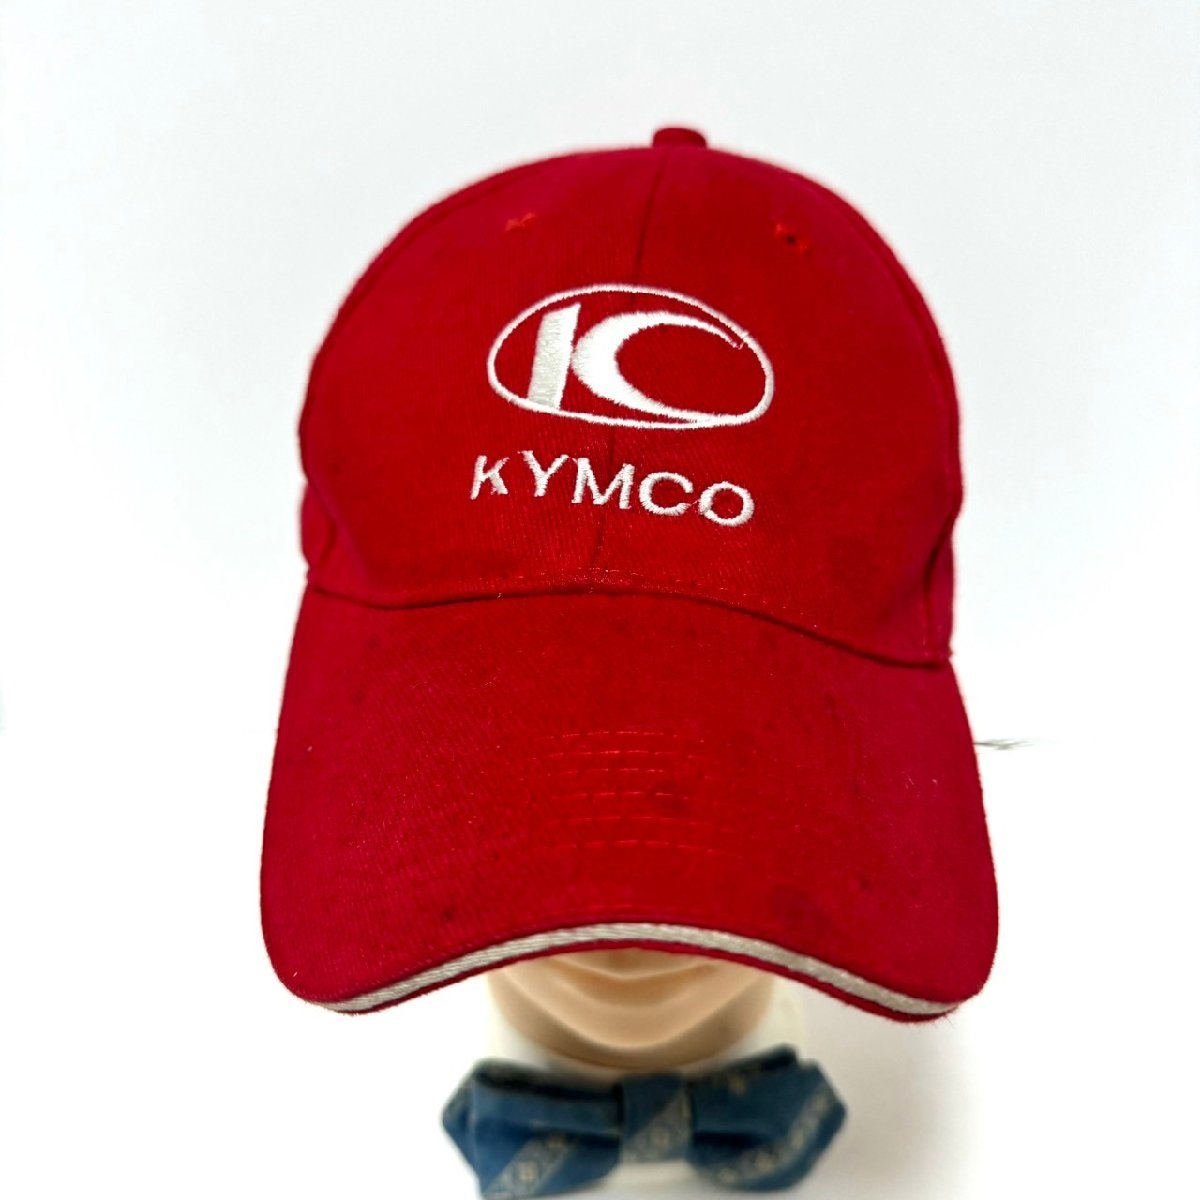 (^w^)b KYMCO キムコ キャップ 帽子 企業 ロゴ 刺繍 オートバイ バイク 台湾 ナンバーワン ブランド ベルクロベルト レッド C0804EEの画像4